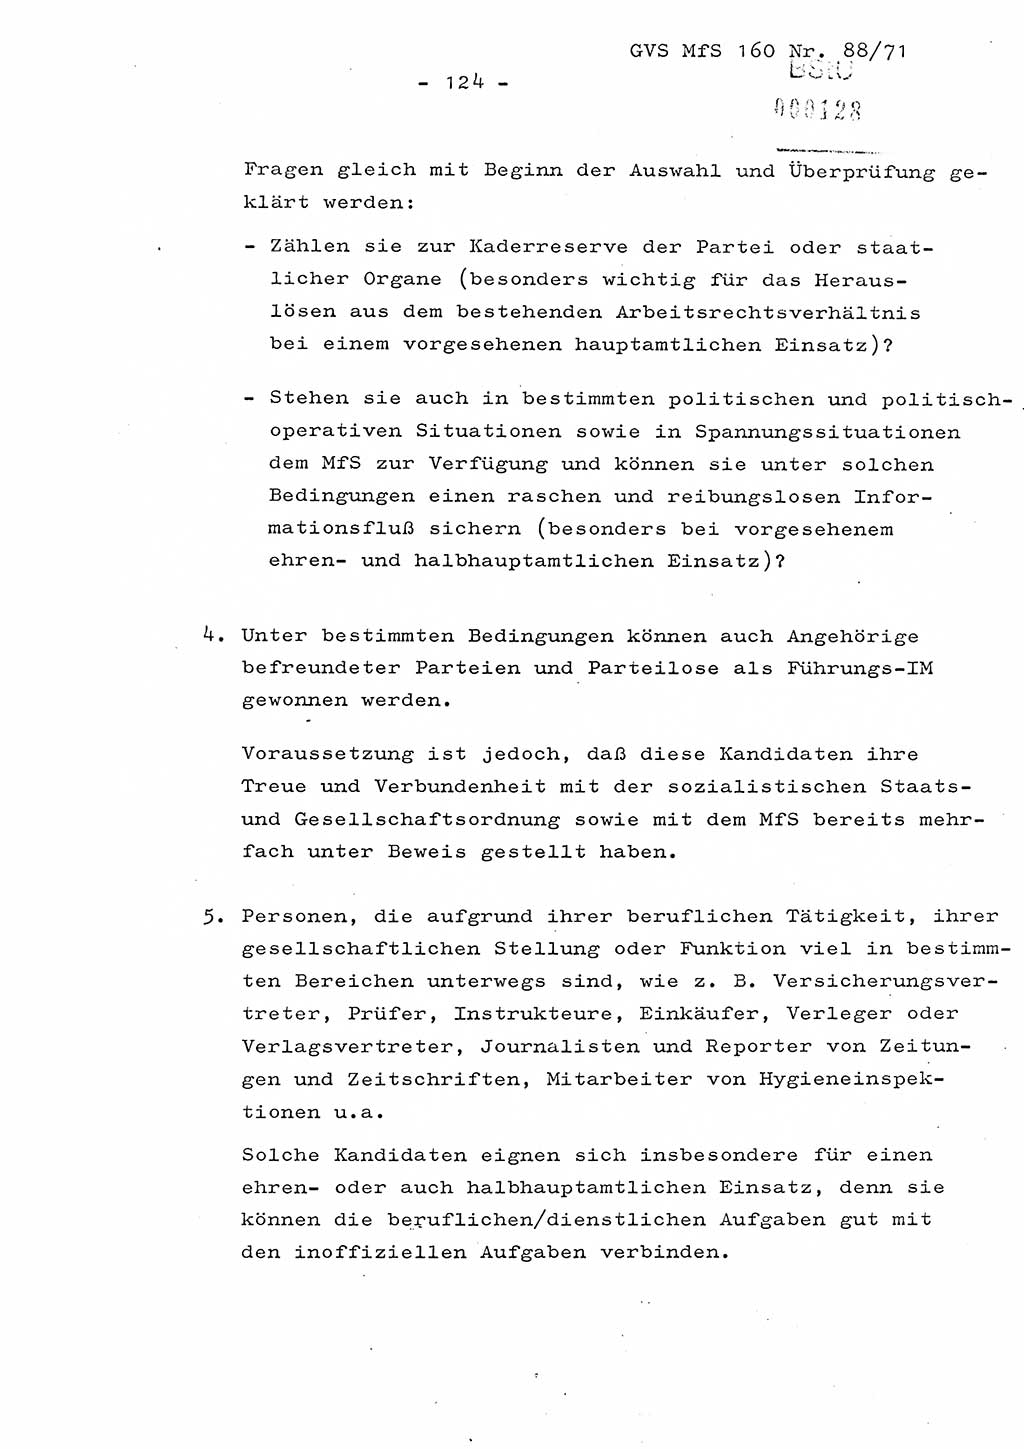 Dissertation Oberstleutnant Josef Schwarz (BV Schwerin), Major Fritz Amm (JHS), Hauptmann Peter Gräßler (JHS), Ministerium für Staatssicherheit (MfS) [Deutsche Demokratische Republik (DDR)], Juristische Hochschule (JHS), Geheime Verschlußsache (GVS) 160-88/71, Potsdam 1972, Seite 124 (Diss. MfS DDR JHS GVS 160-88/71 1972, S. 124)